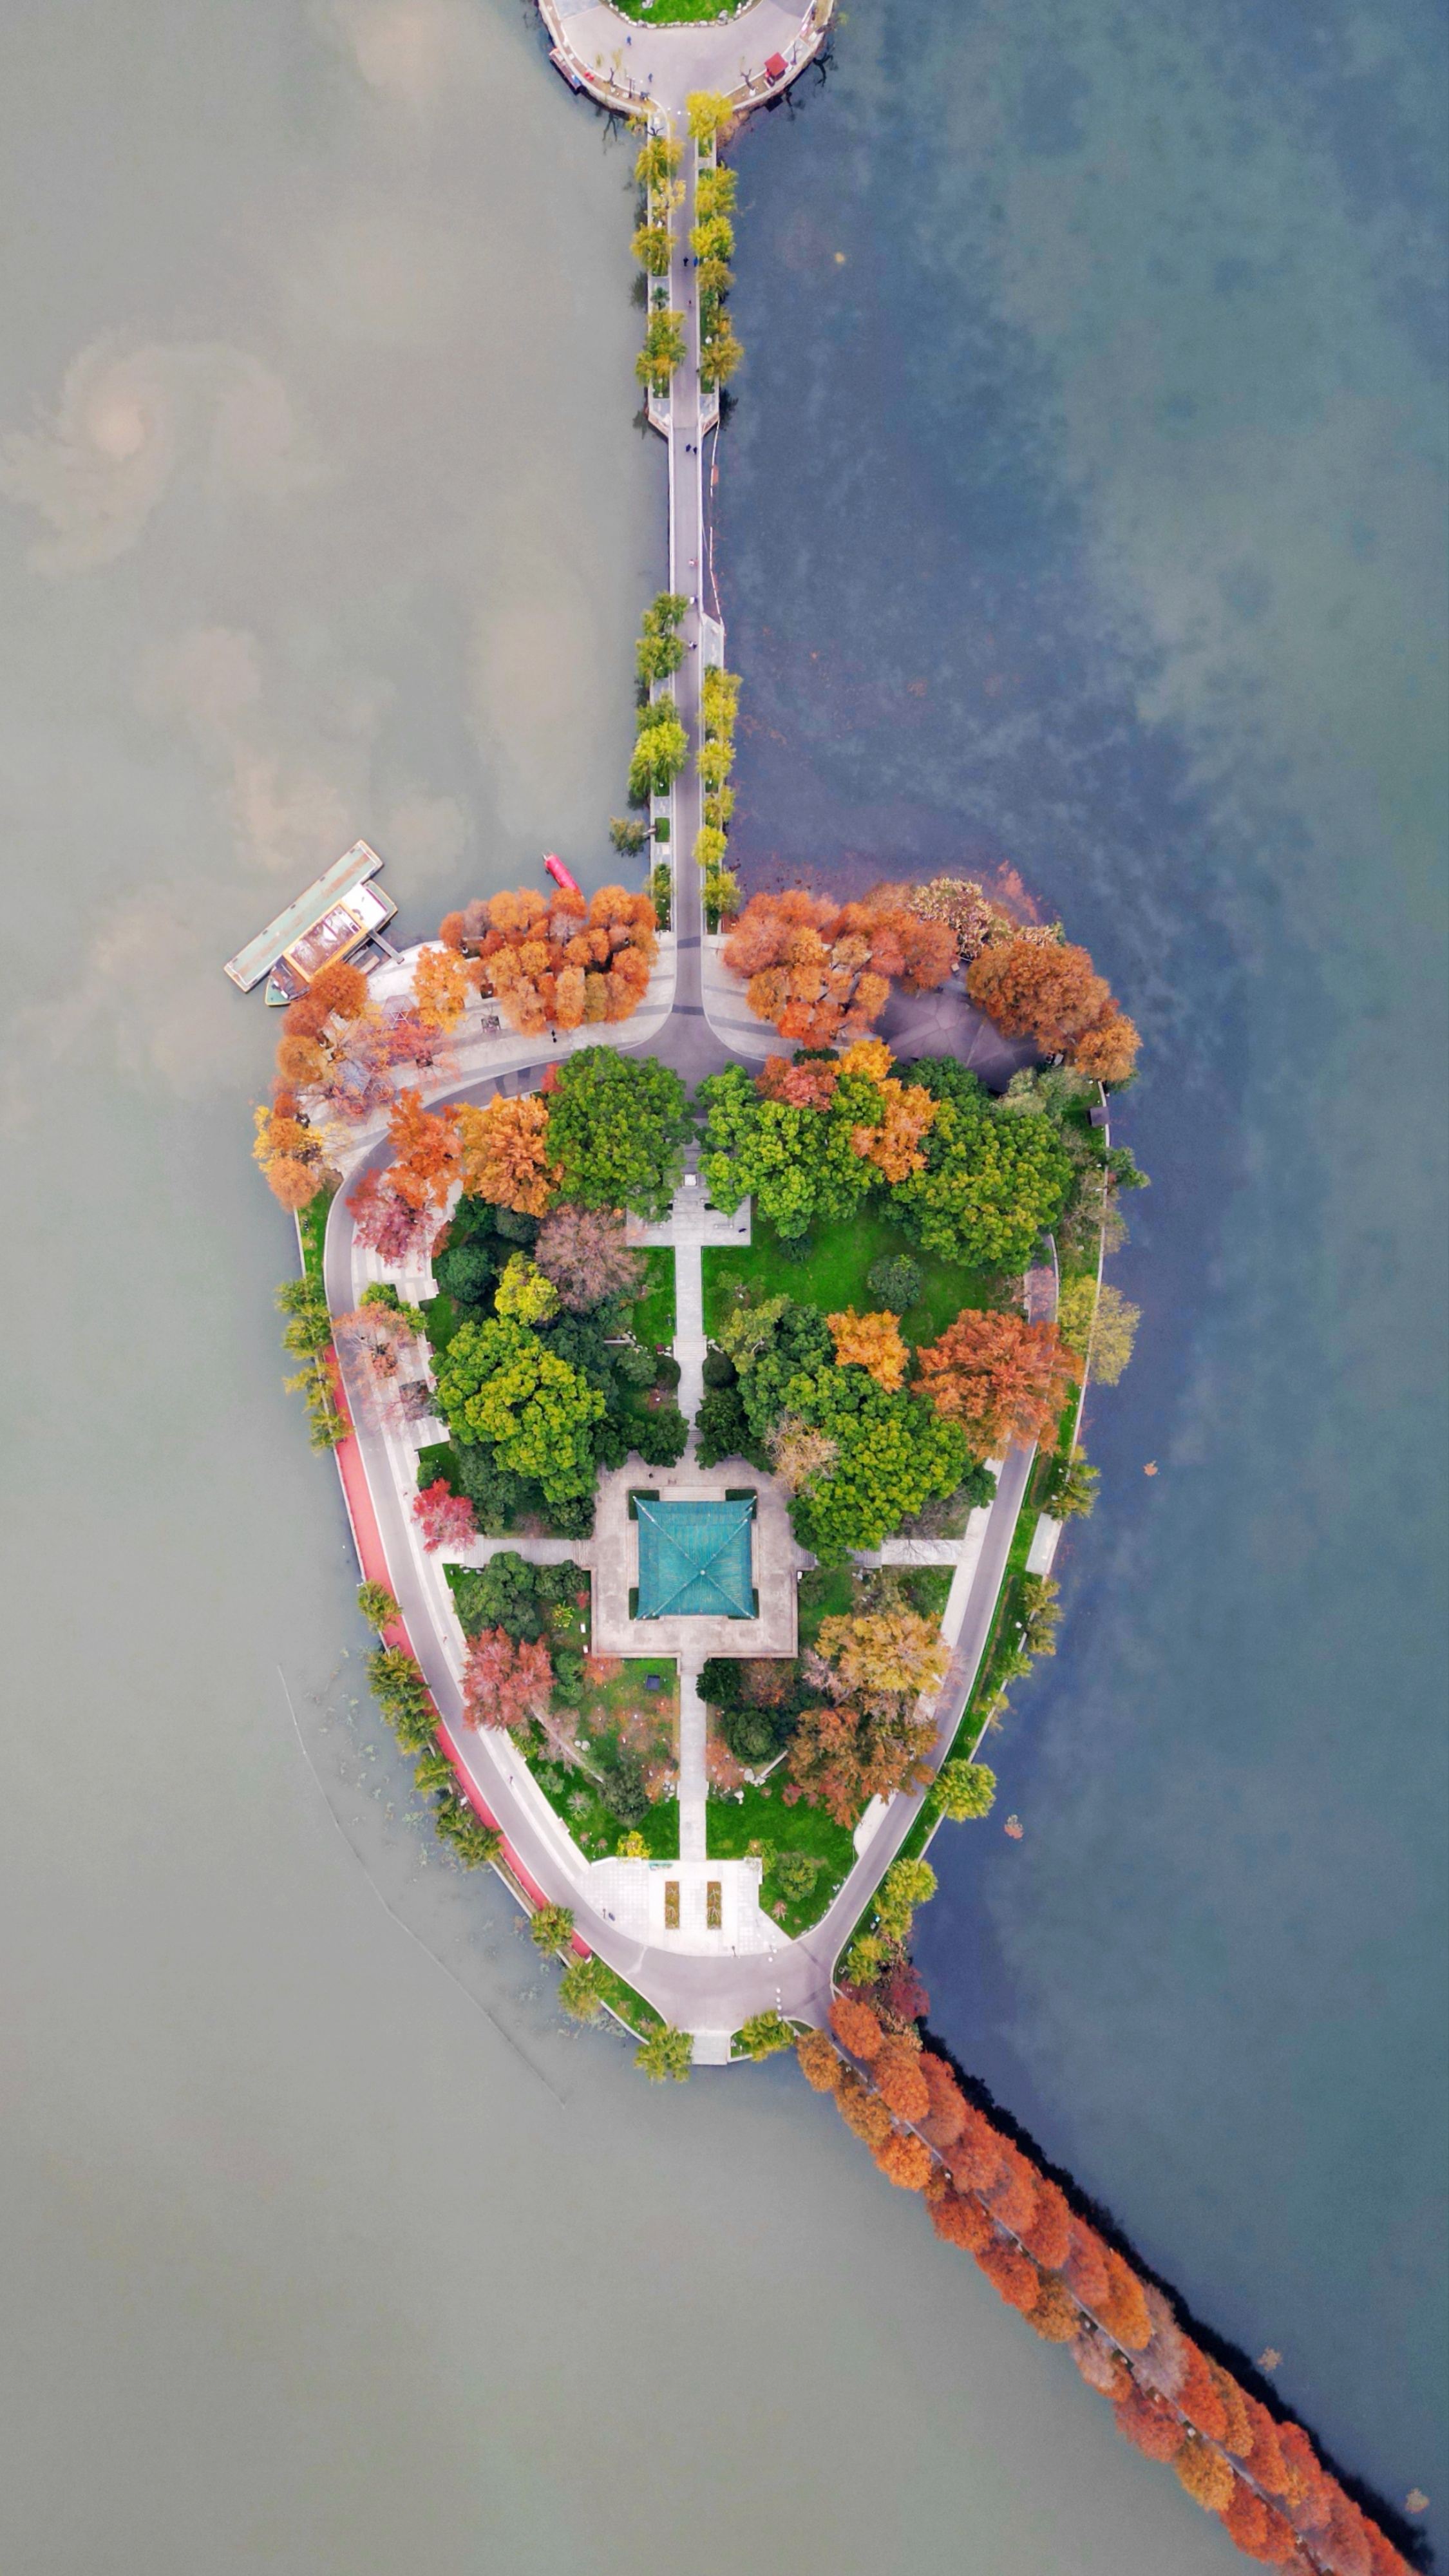 hk_c_東湖的雞心項鏈--漢東湖是中國最大的城中湖，湖中有許多小島，待到秋天時，小島的樹分五顏六色。這個小島犹如雞心項鏈，雞心上還鑲嵌着五顏六色的樹，最中間竟然是一顆寶藍色的寶石，這種風景有多美？--安娜.jpeg